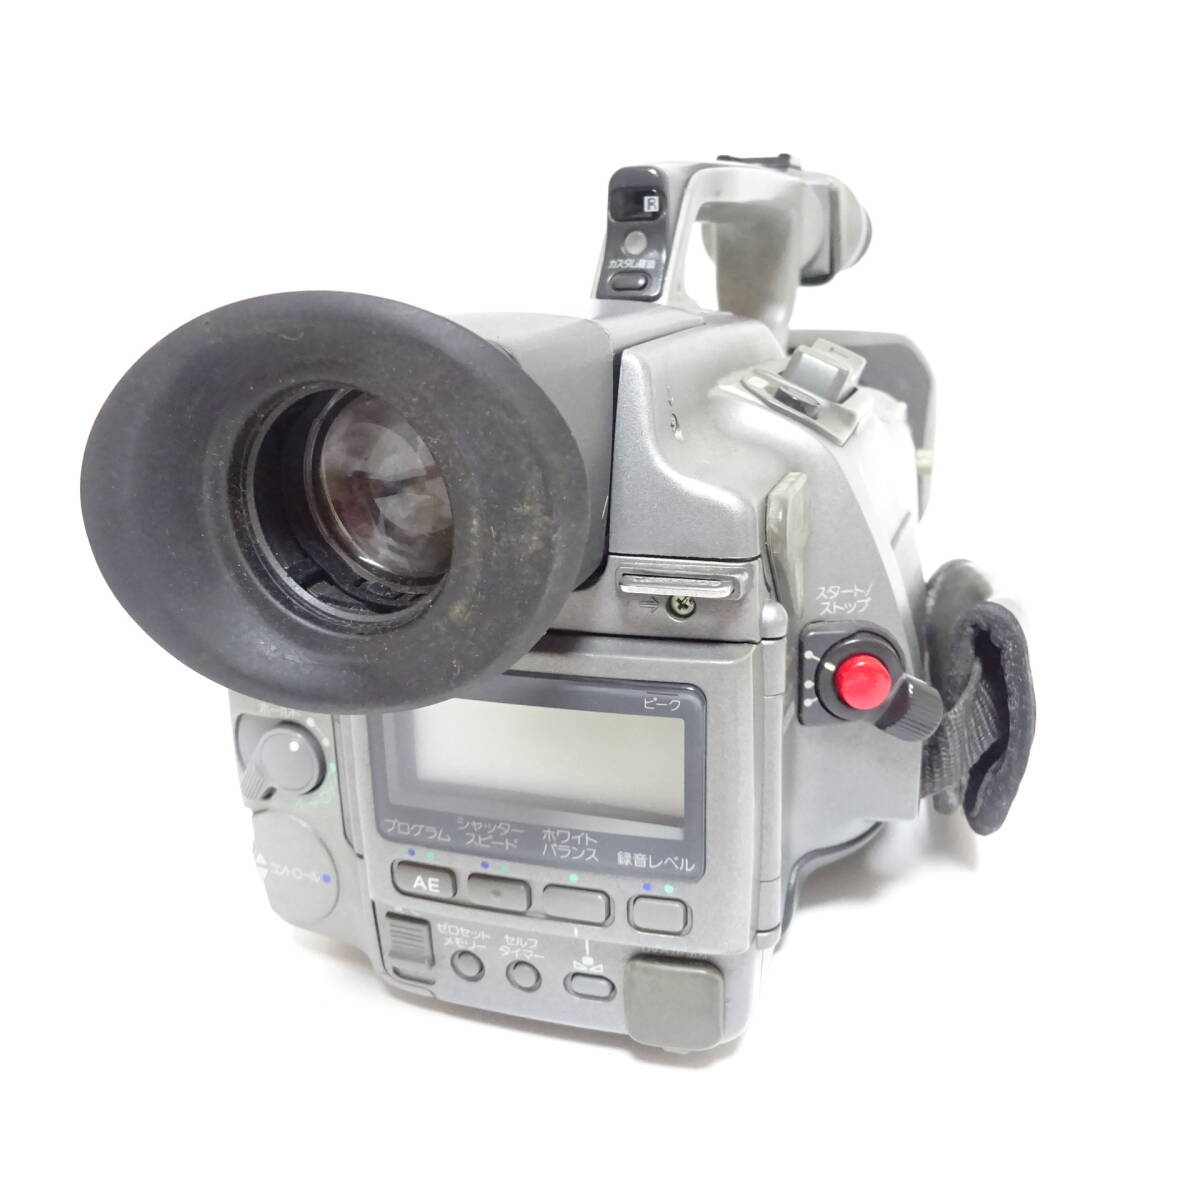 ソニー DCR-VX1000 DCR-VX2000 ビデオカメラ 2個セット Sony 汚れ使用感あり 動作未確認 ジャンク品 100サイズ発送 KK-2701194-302-mrrz_画像8